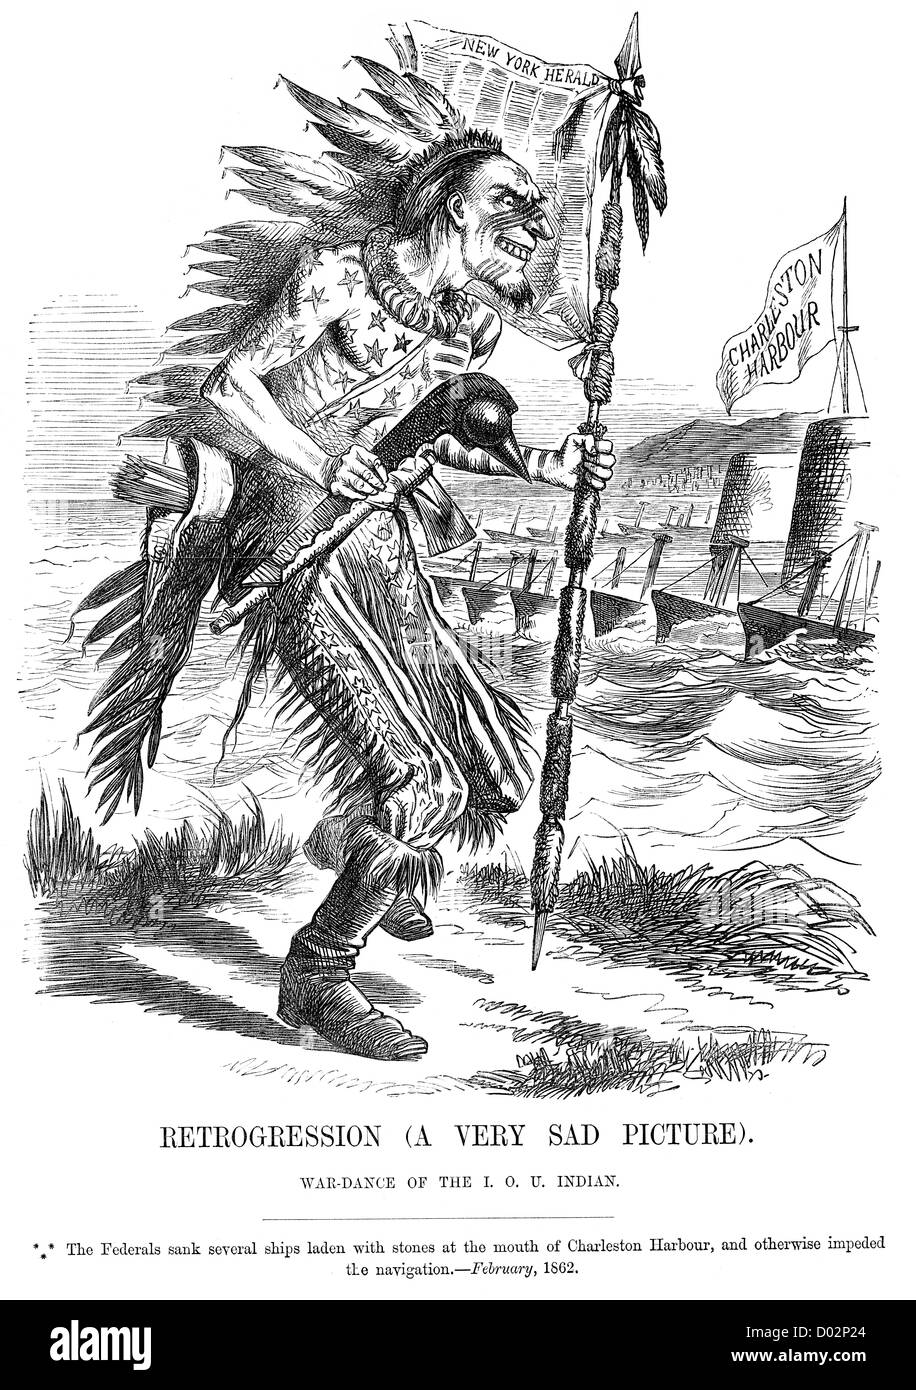 Rückschritt-Kriegstanz der indischen IOU. Politische Karikatur über die Blockade von Charleston Hafen, während des amerikanischen Bürgerkrieges Stockfoto